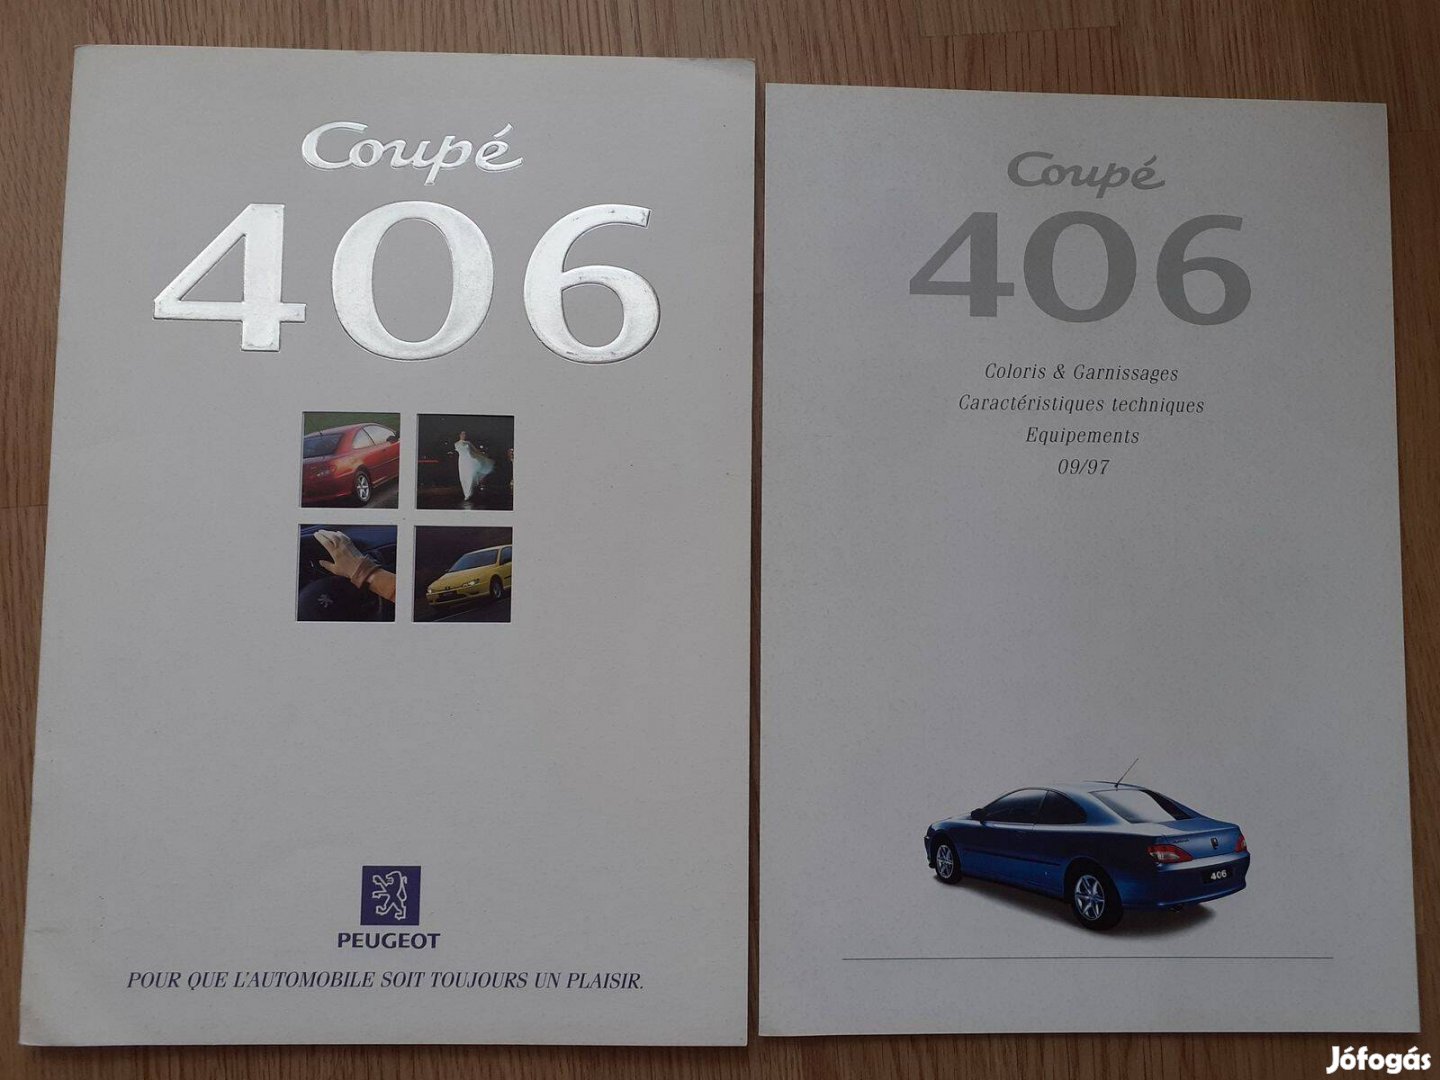 Peugeot 406 Coupe prospektus+ műszaki adatok - 1997, francia nyelvű